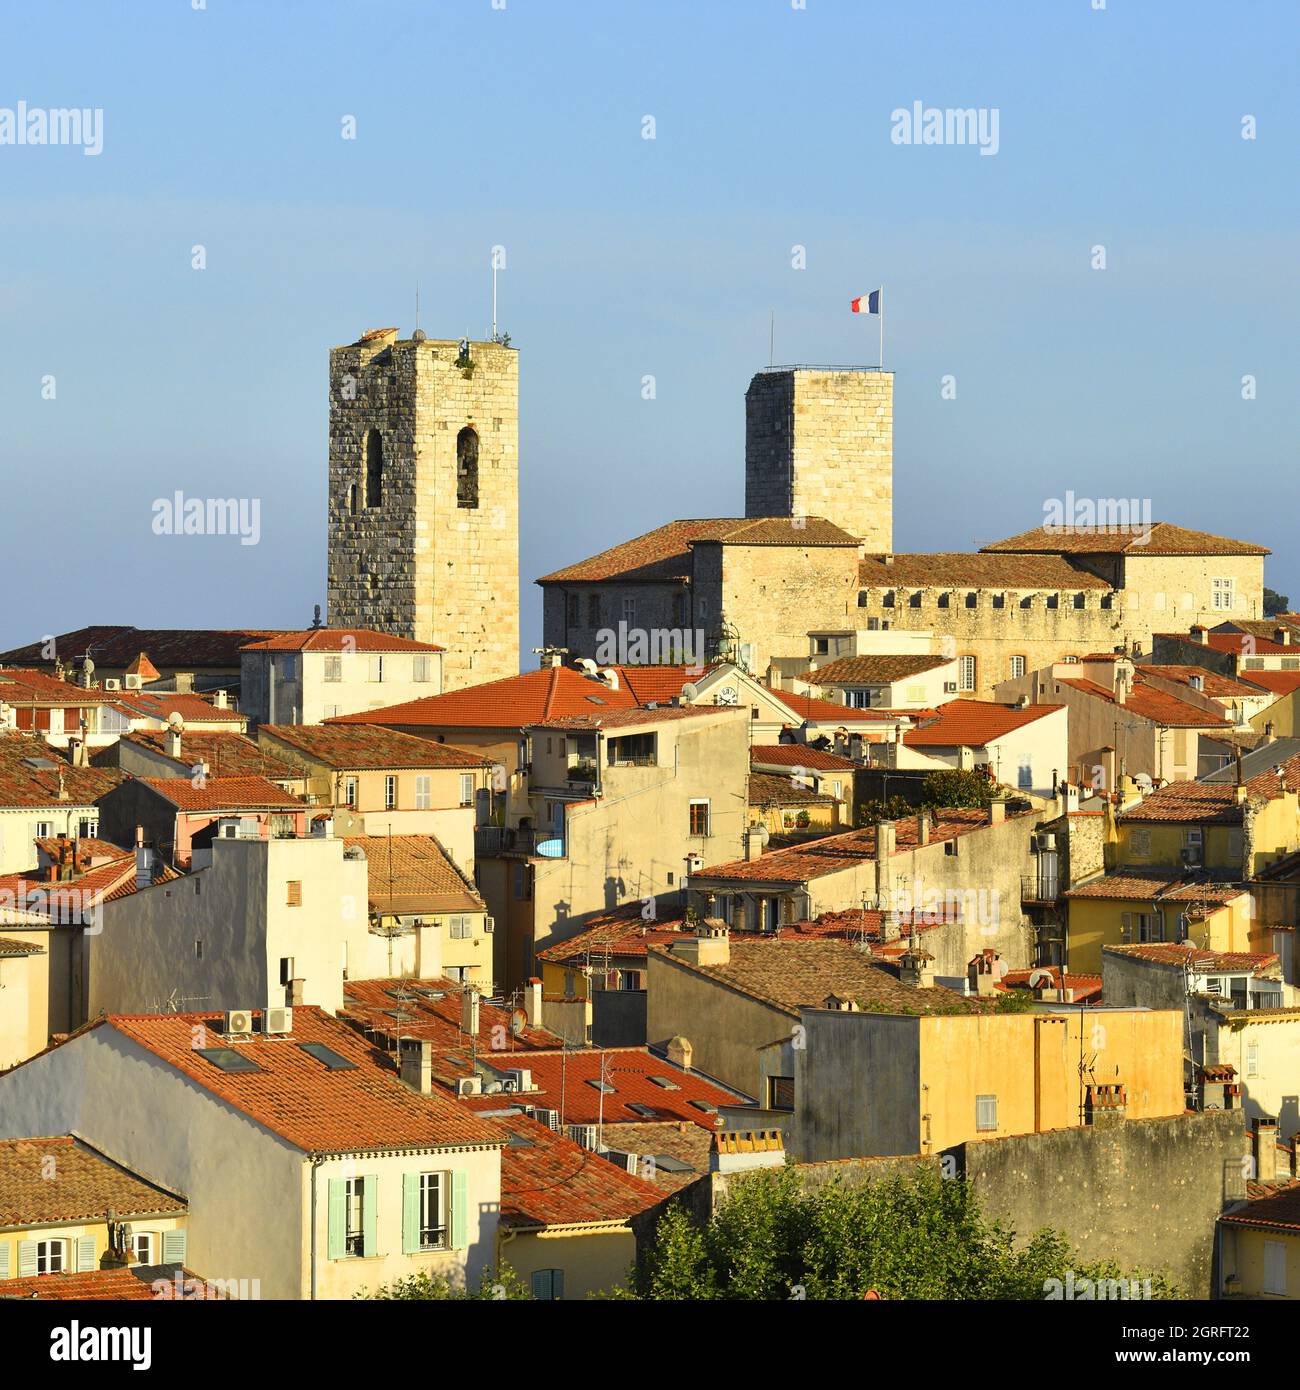 Francia, Alpes Maritimes, Antibes, la città vecchia lasciando apparire le due torri saracene del Museo Picasso e la Cattedrale Notre Dame dell'Immacolata Concezione Foto Stock